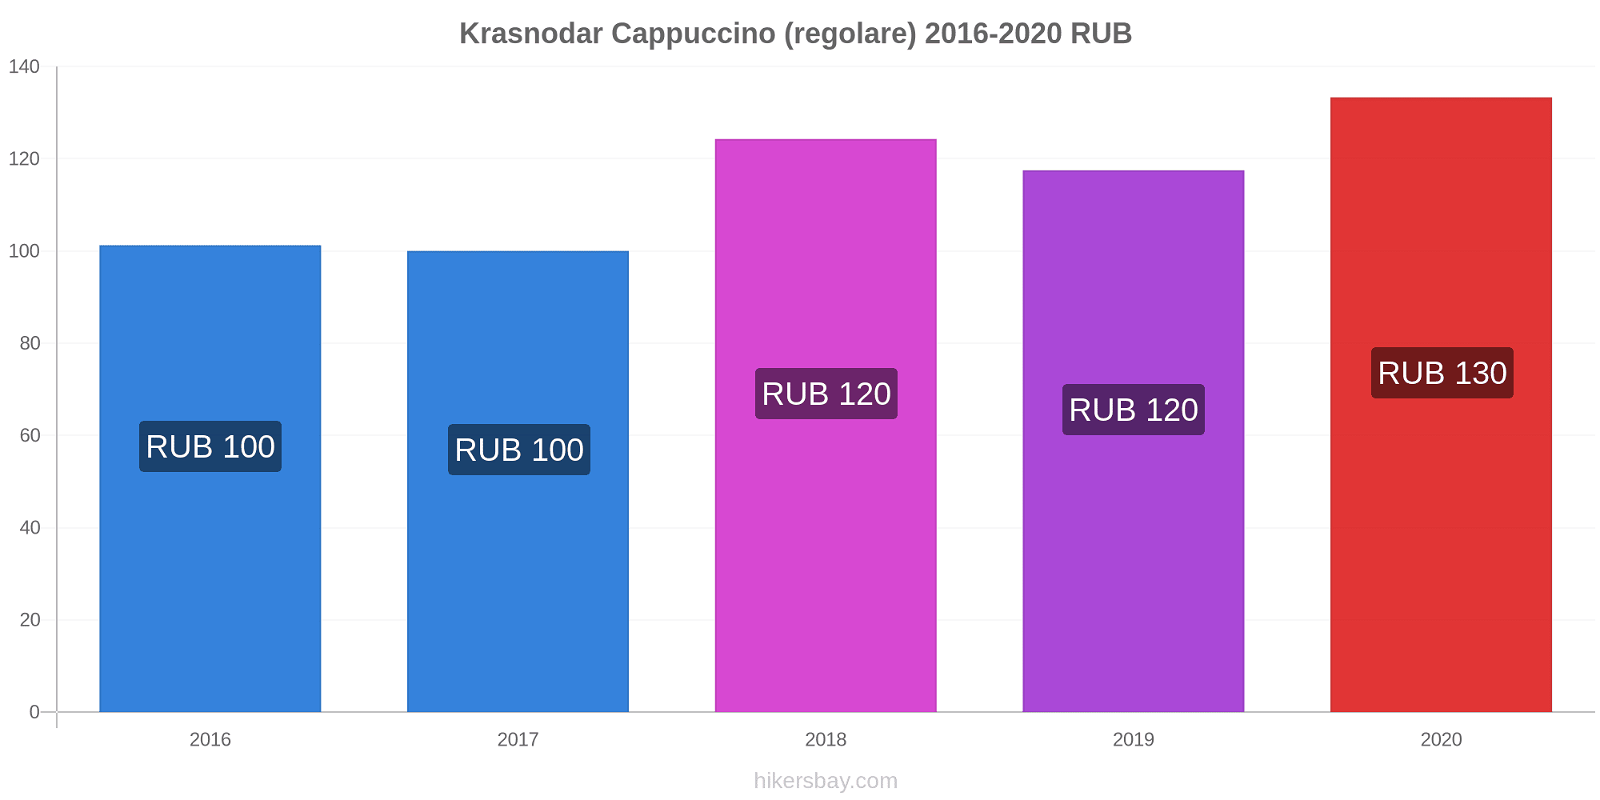 Krasnodar variazioni di prezzo Cappuccino (normale) hikersbay.com